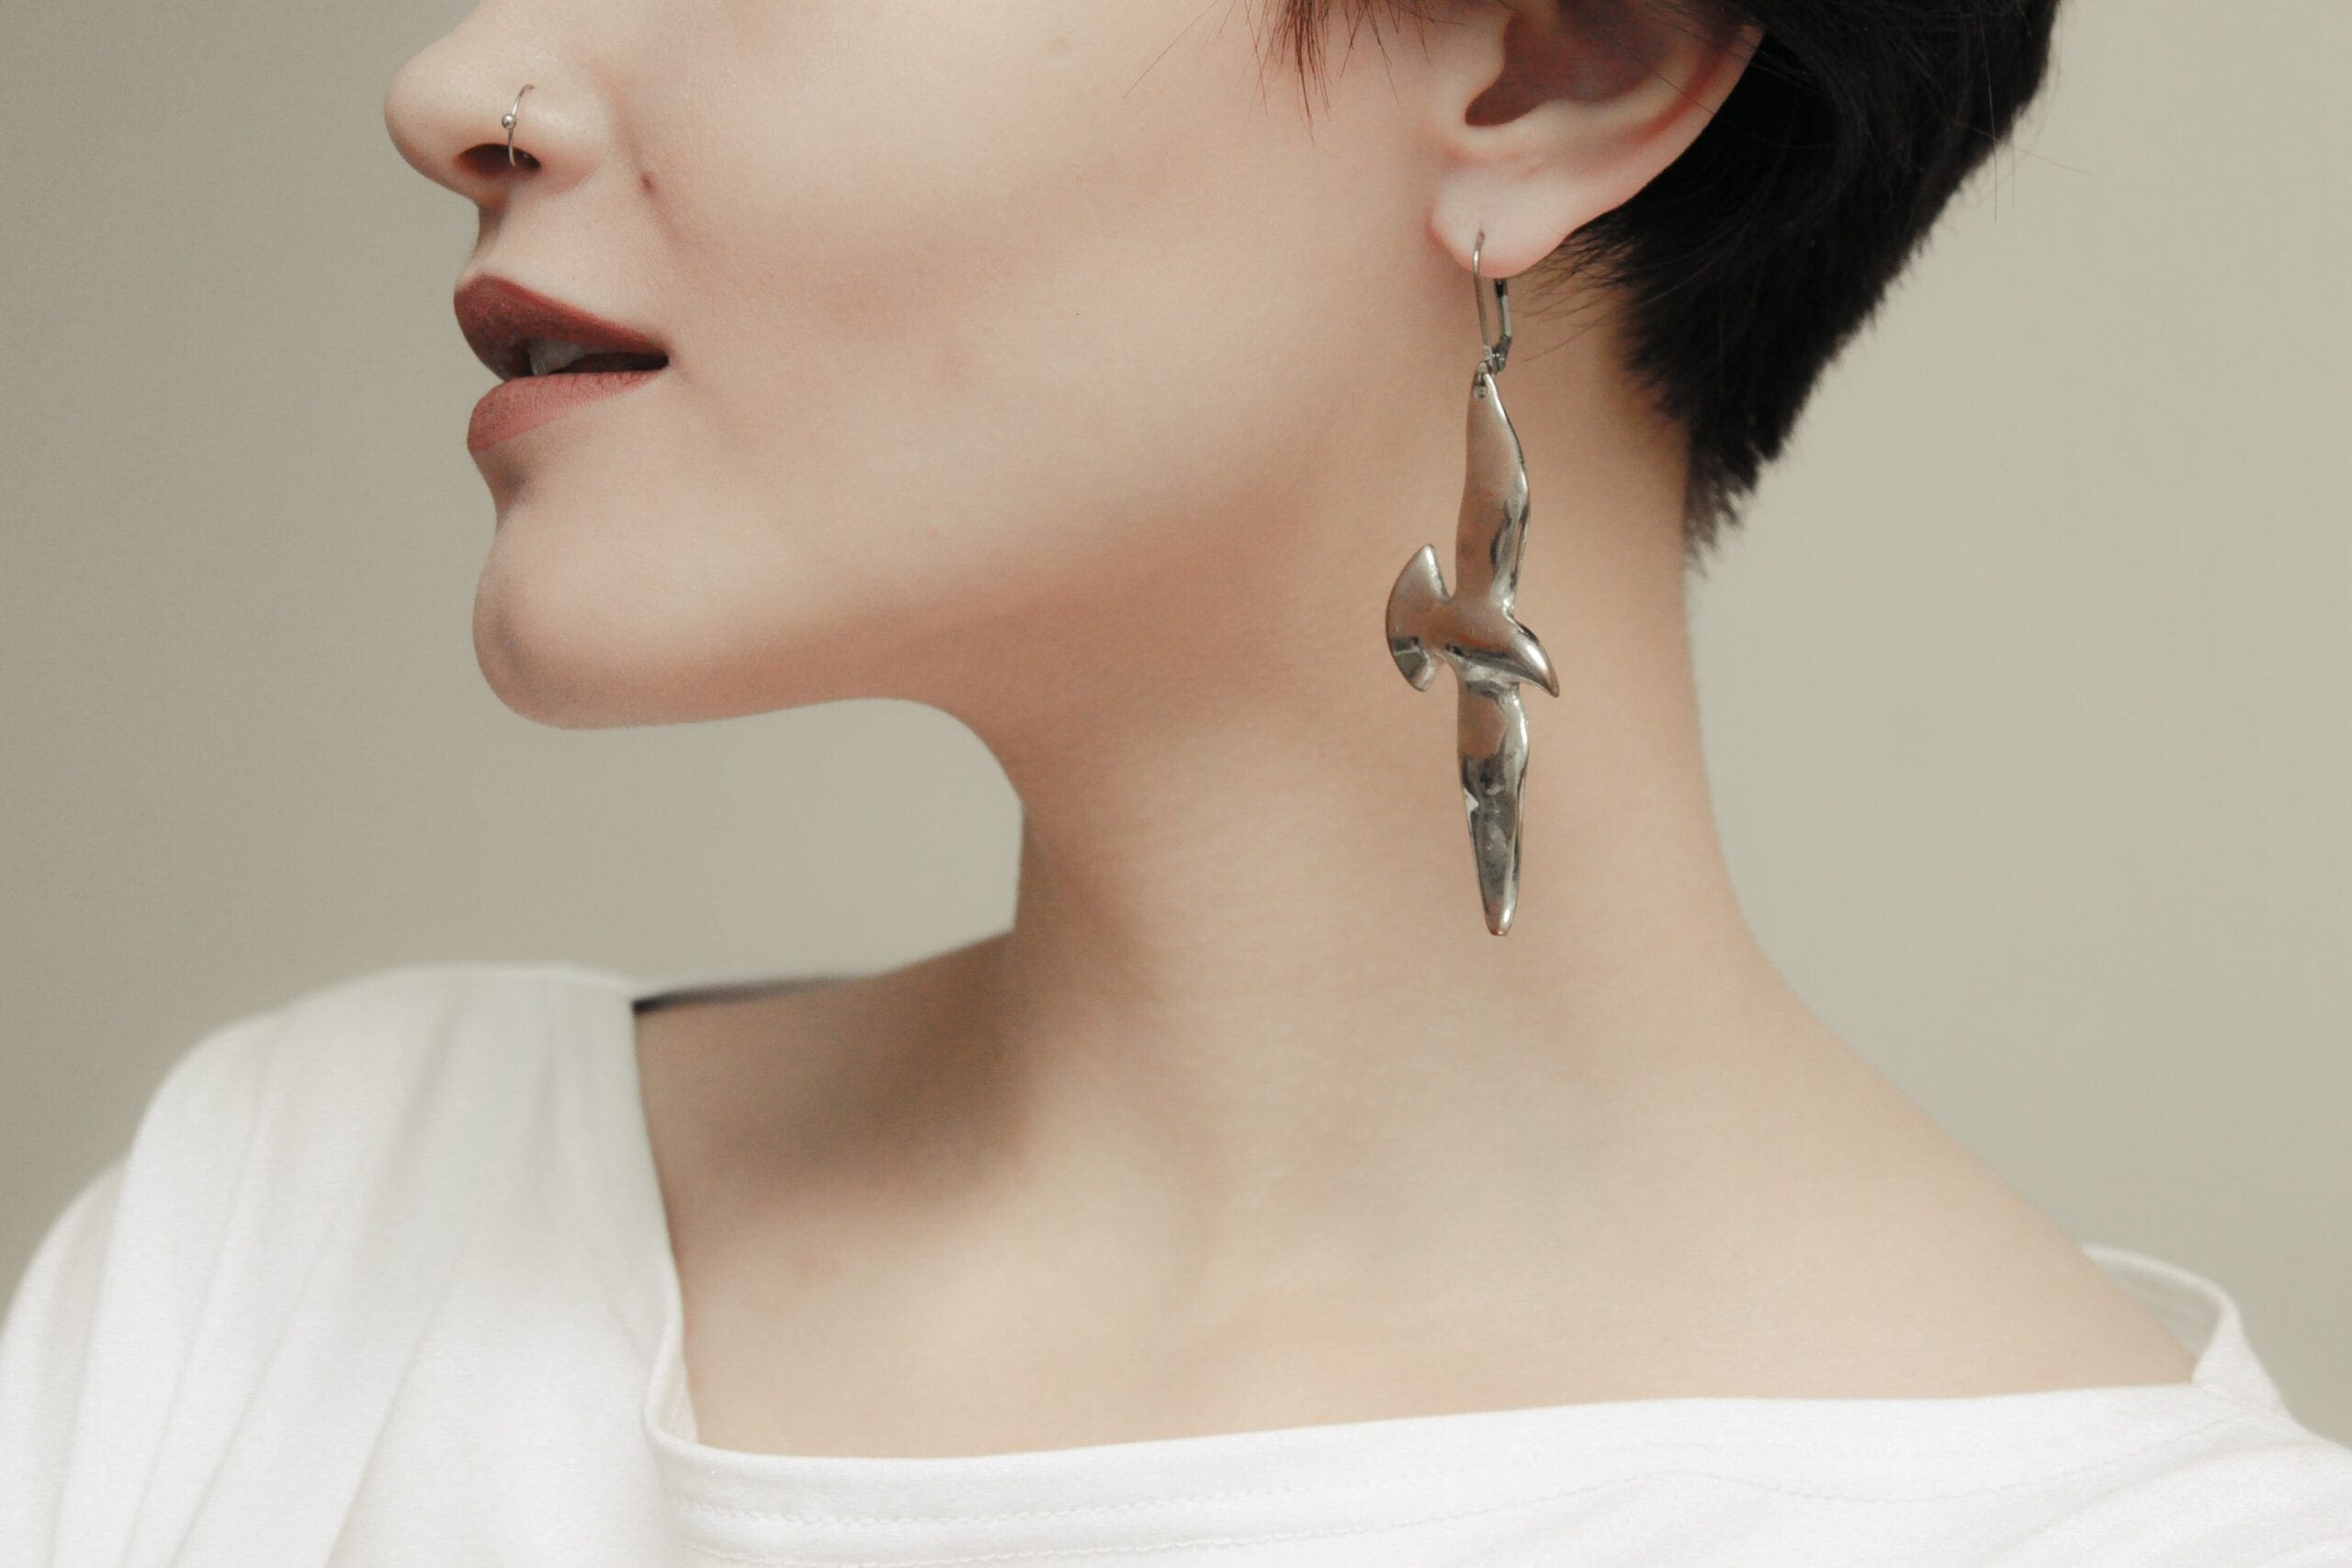 jewel designs woman in white scoop neck shirt wearing silver earrings